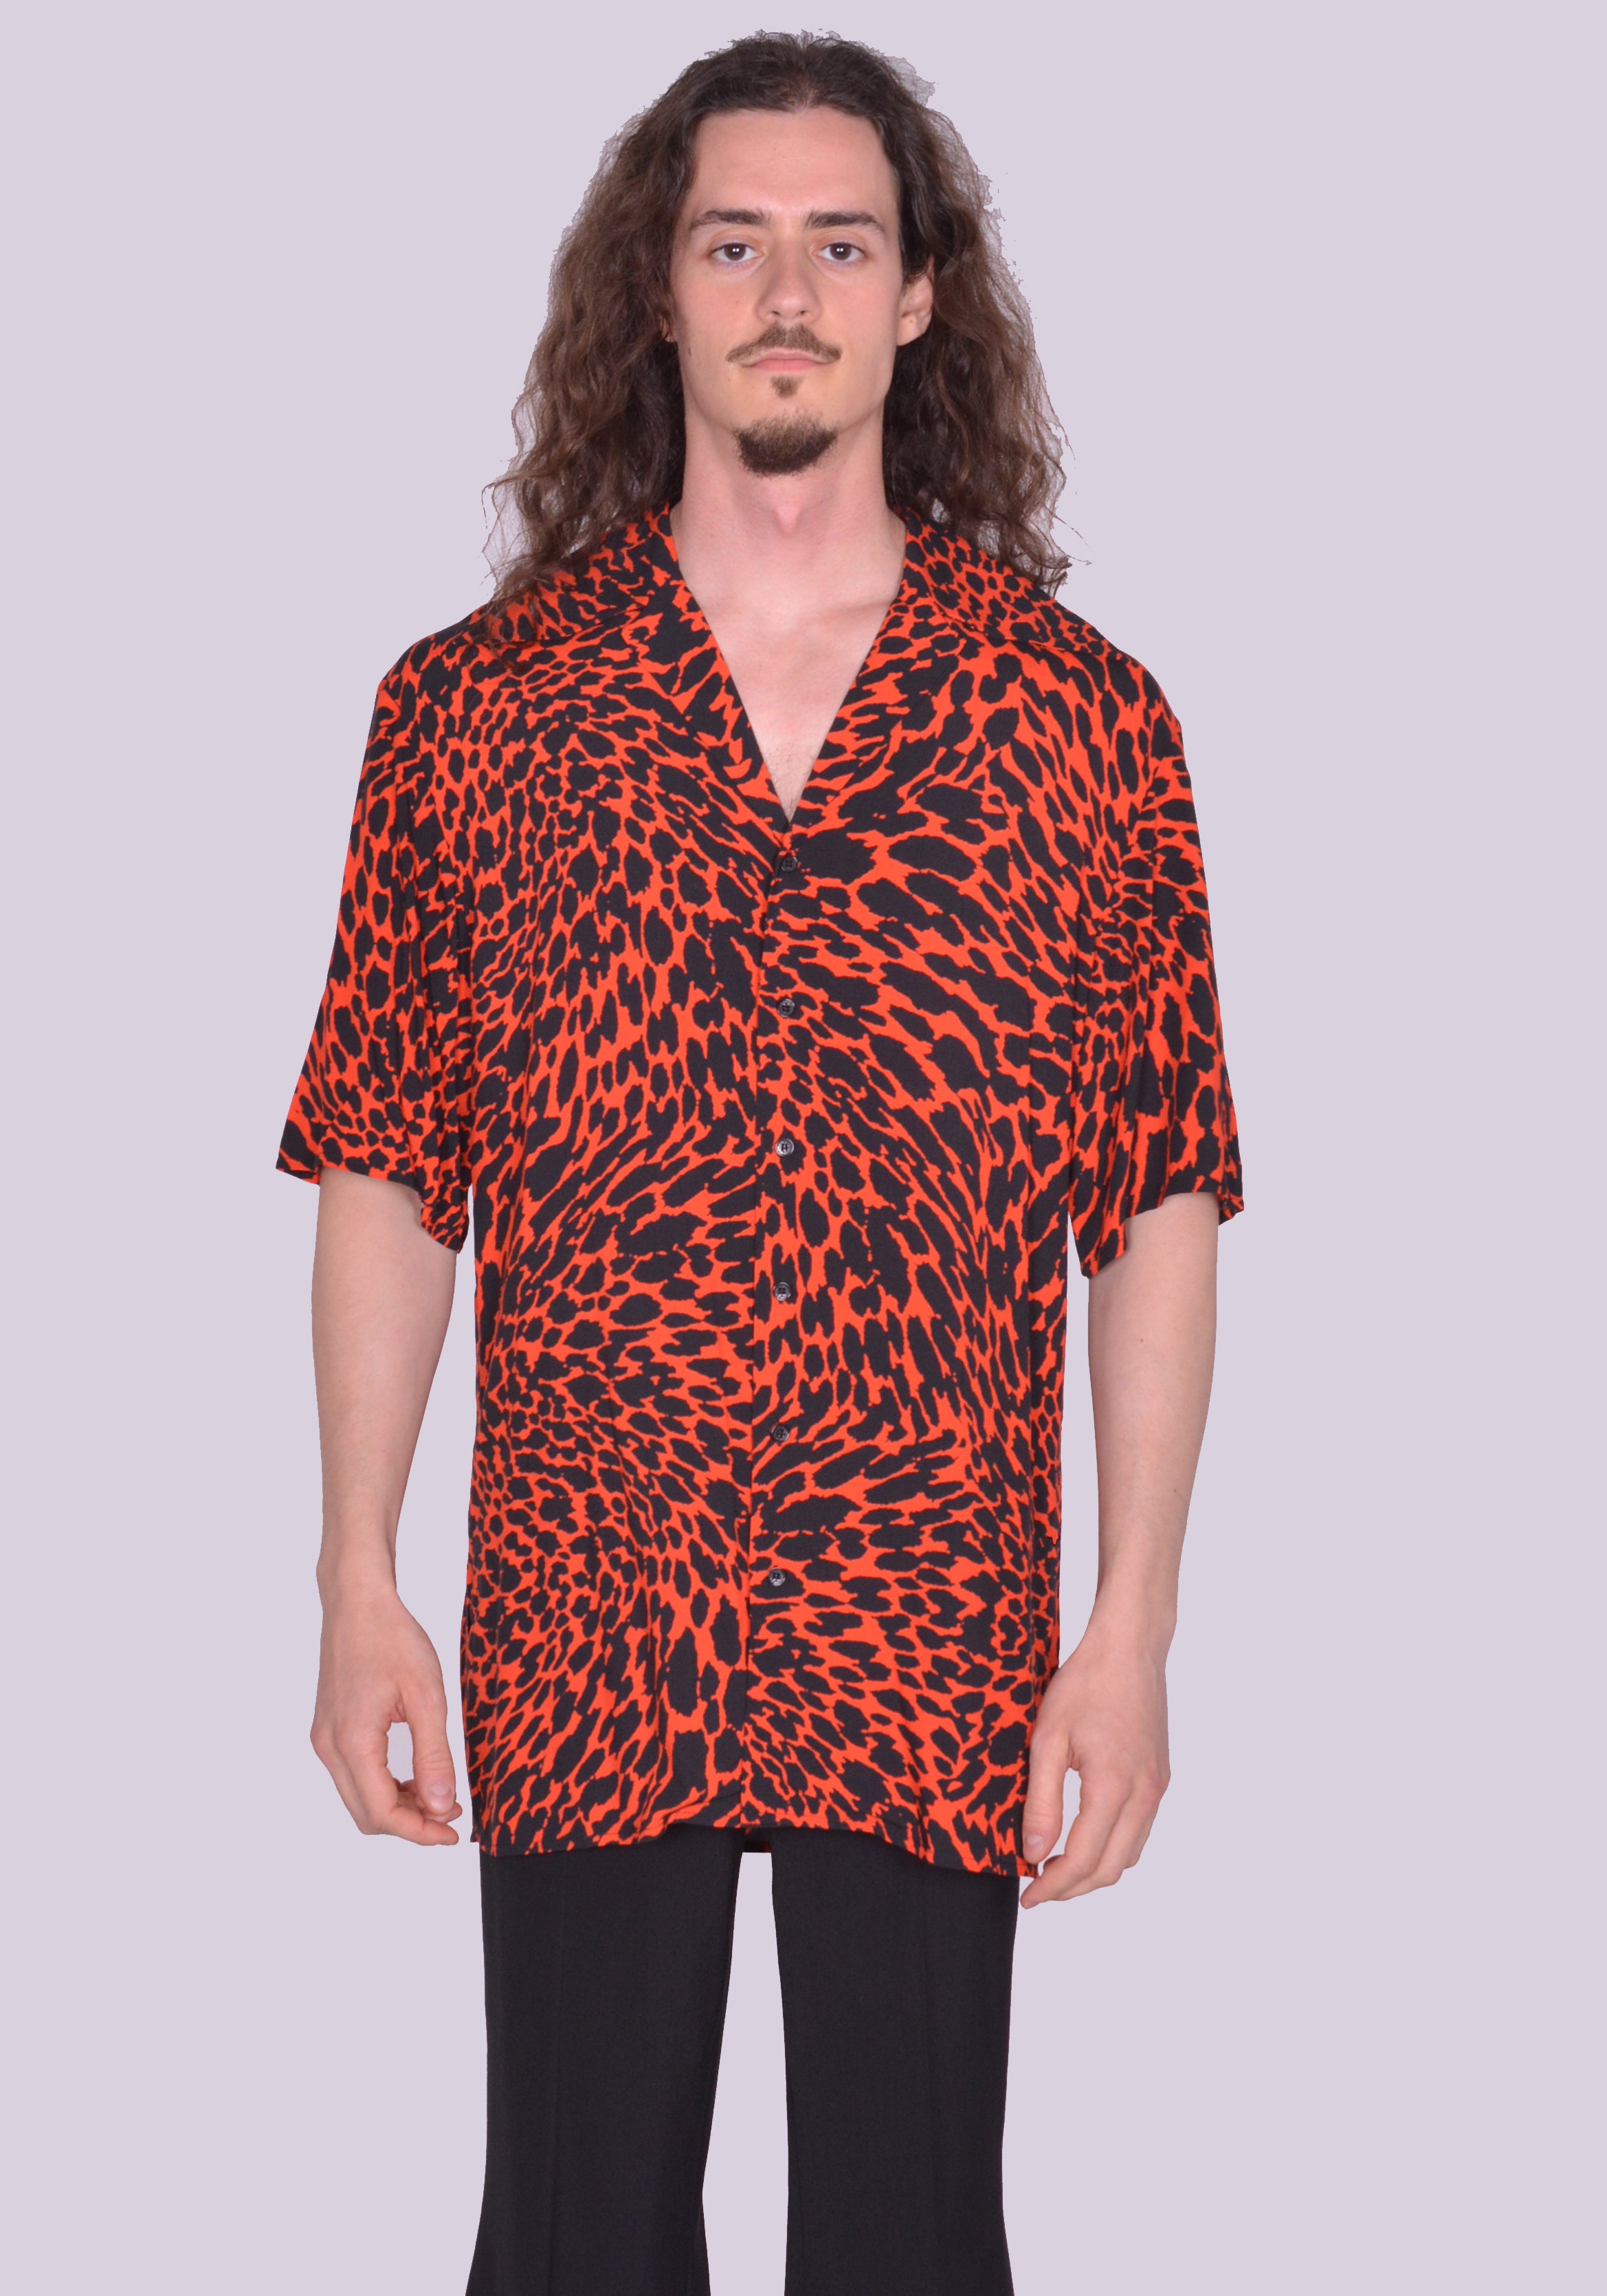 レオパード パジャマシャツ Leopard Pajama Shirt